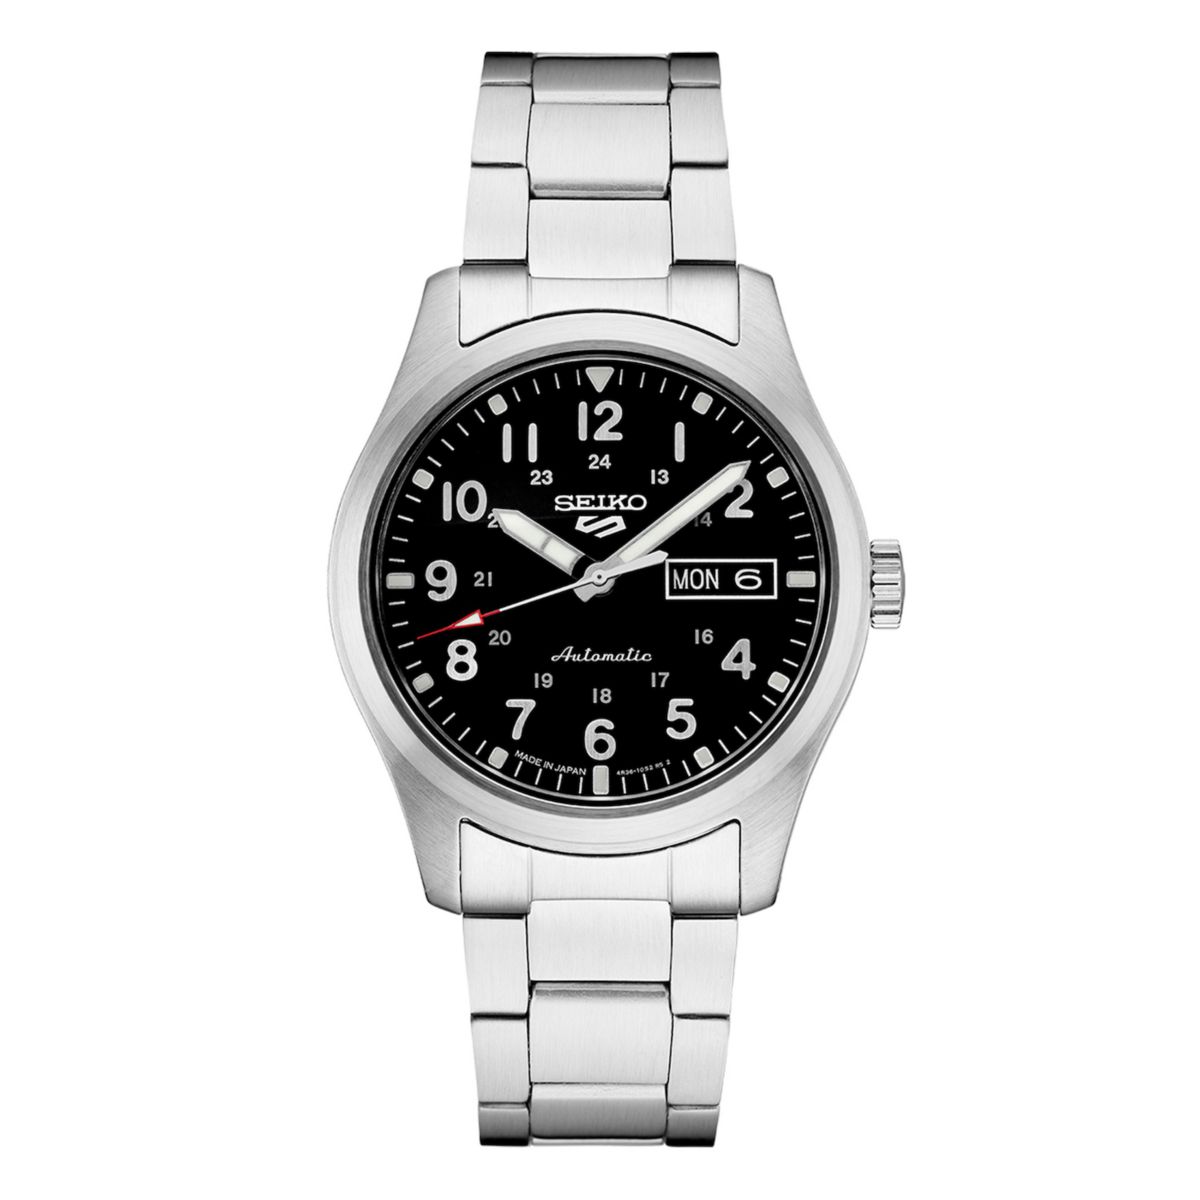 Мужские часы Seiko 5 Sports из нержавеющей стали с черным циферблатом - SRPG27 Seiko